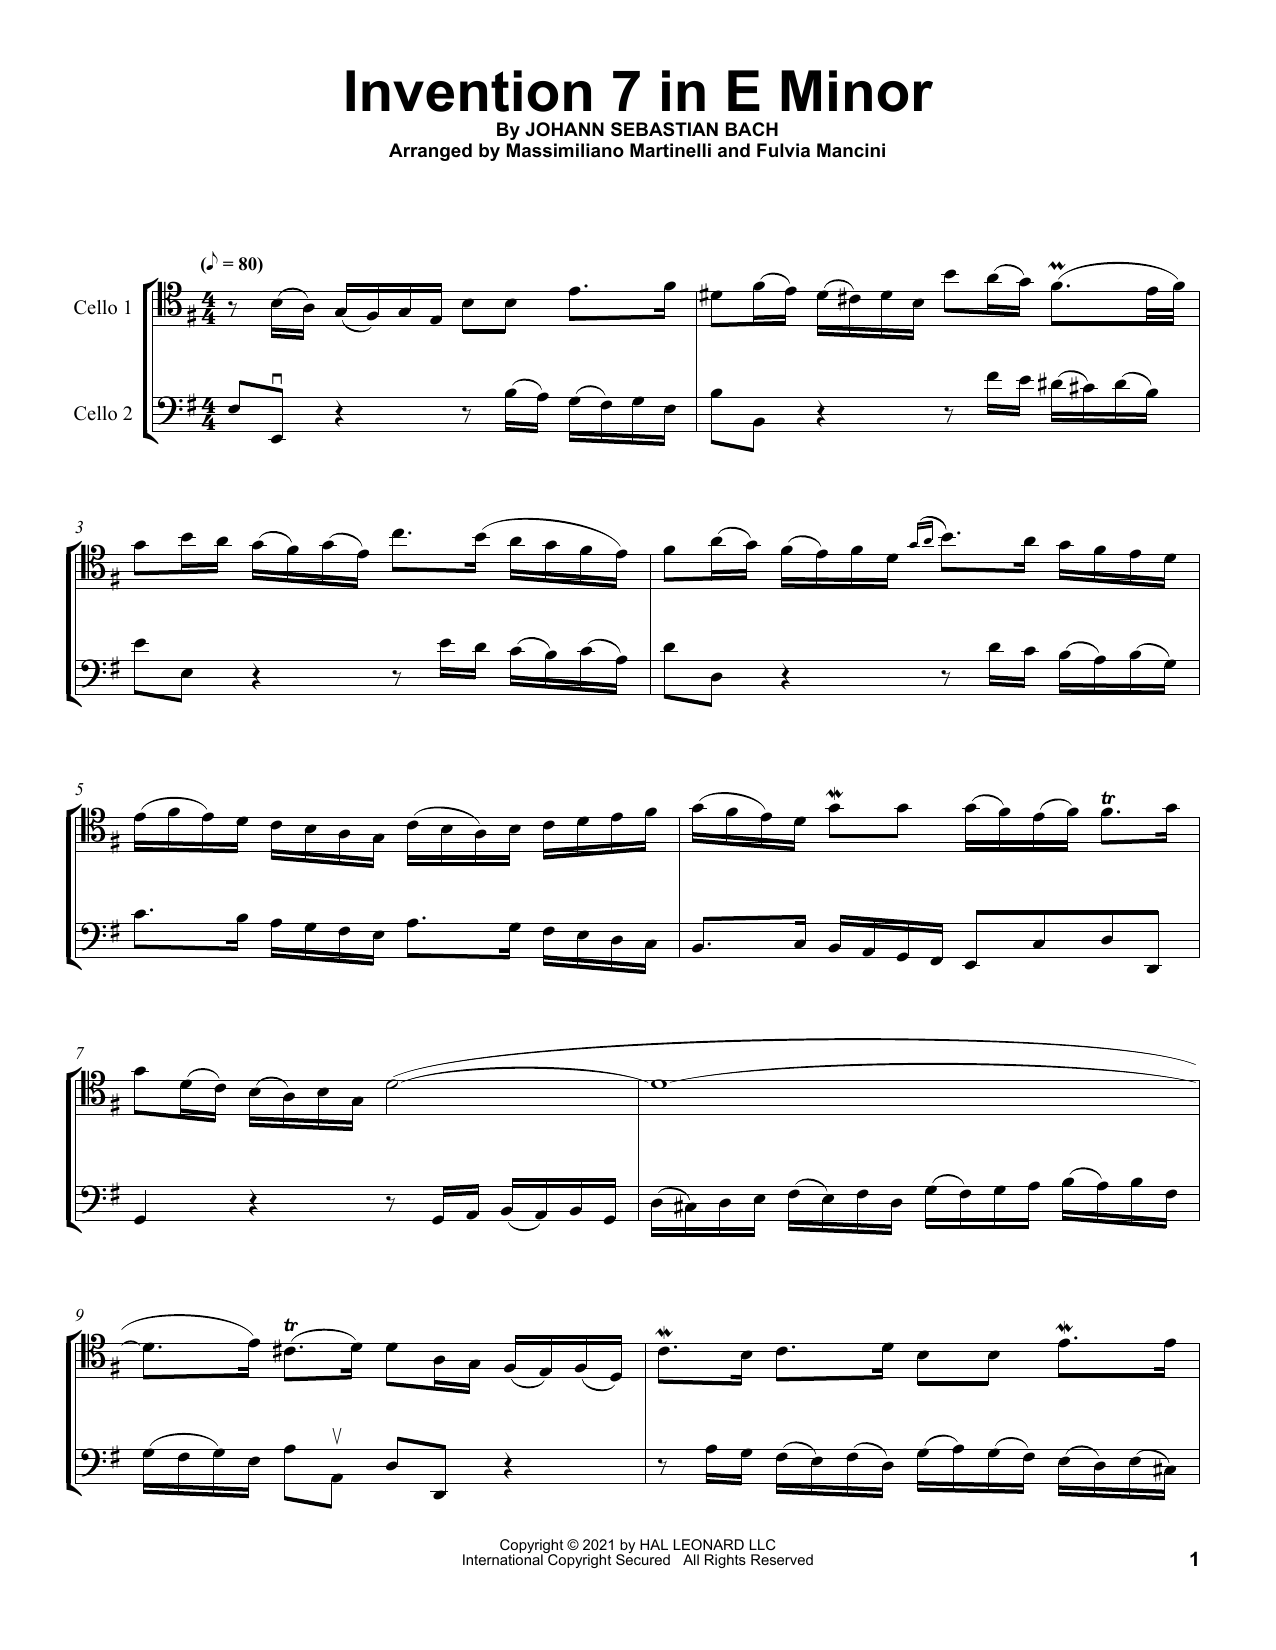 Download Mr & Mrs Cello Invention 7 In E Minor Sheet Music